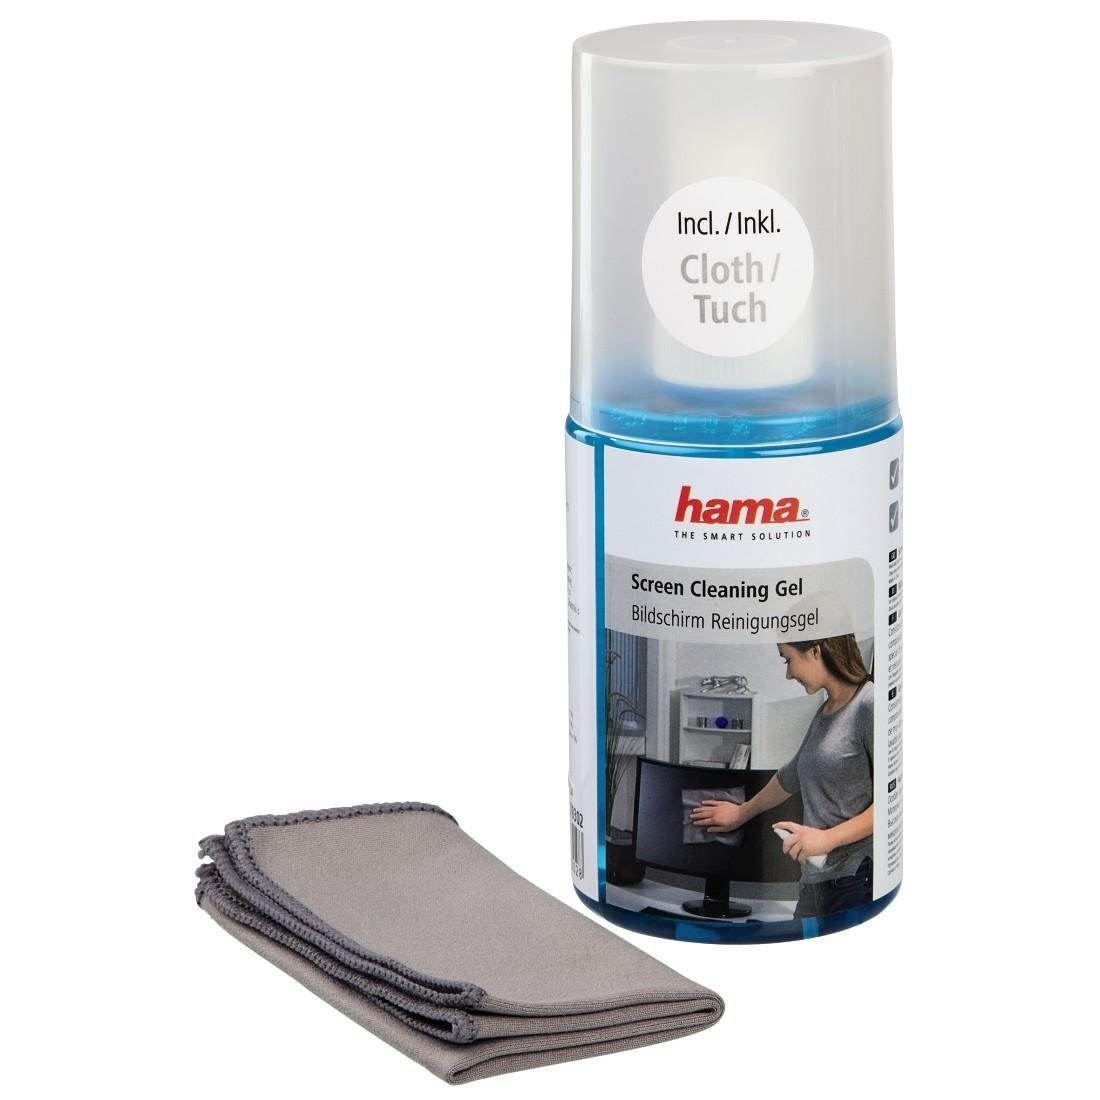 200 Hama Tuch inklusive Bildschirm-Reinigungsgel, Reinigungs-Set ml,